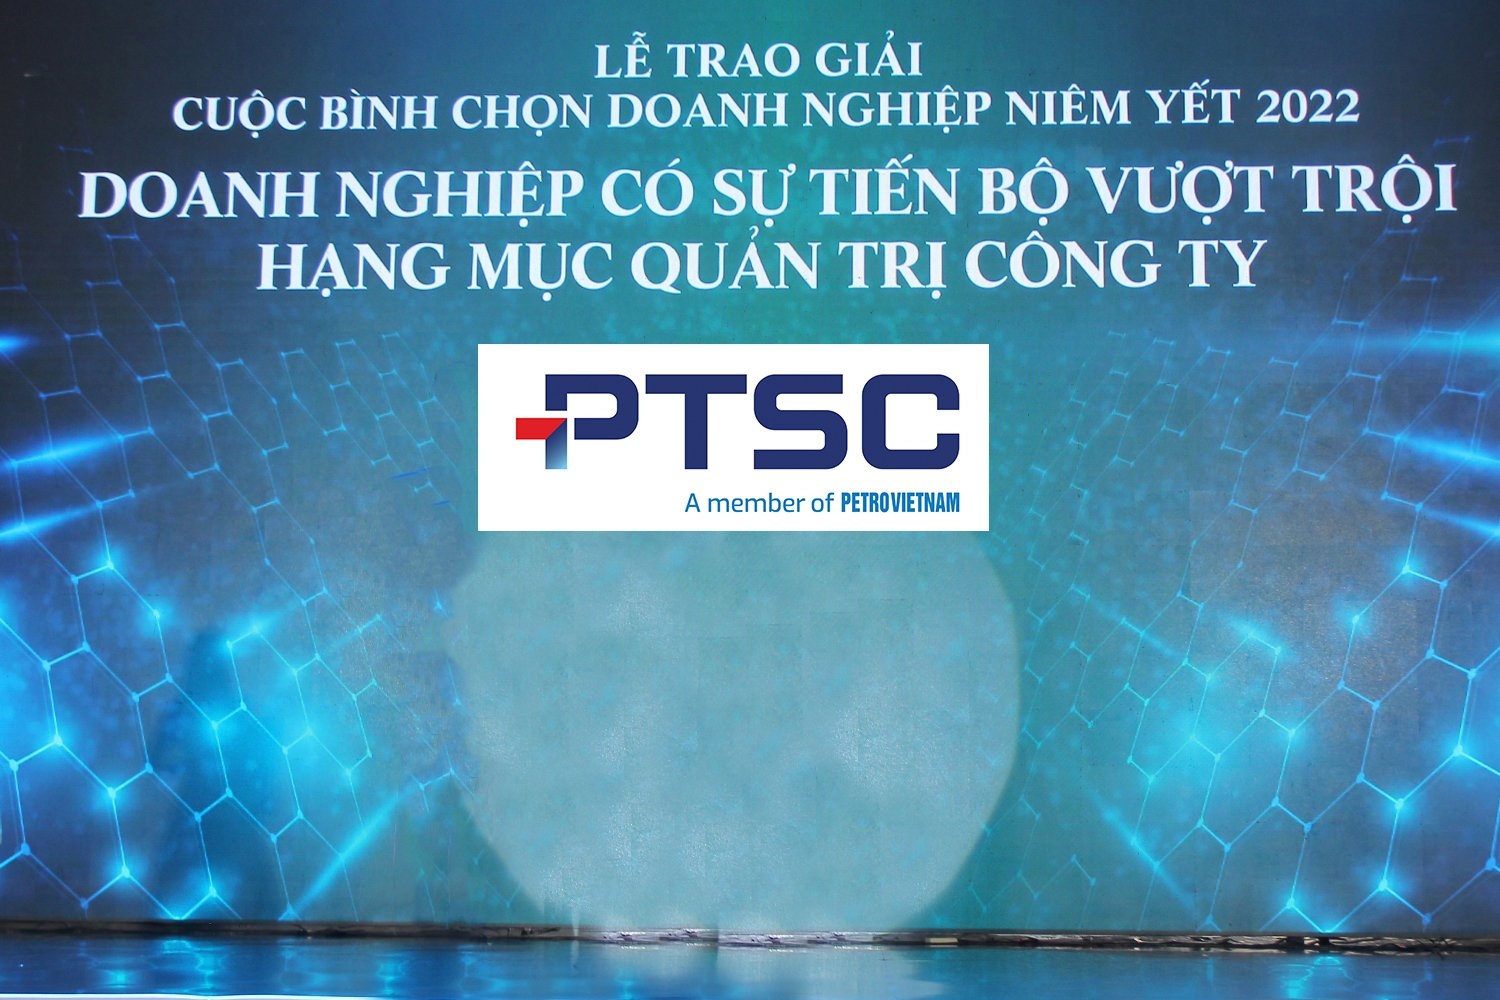 PTSC đạt giải “Tiến bộ vượt trội” hạng mục quản trị công ty